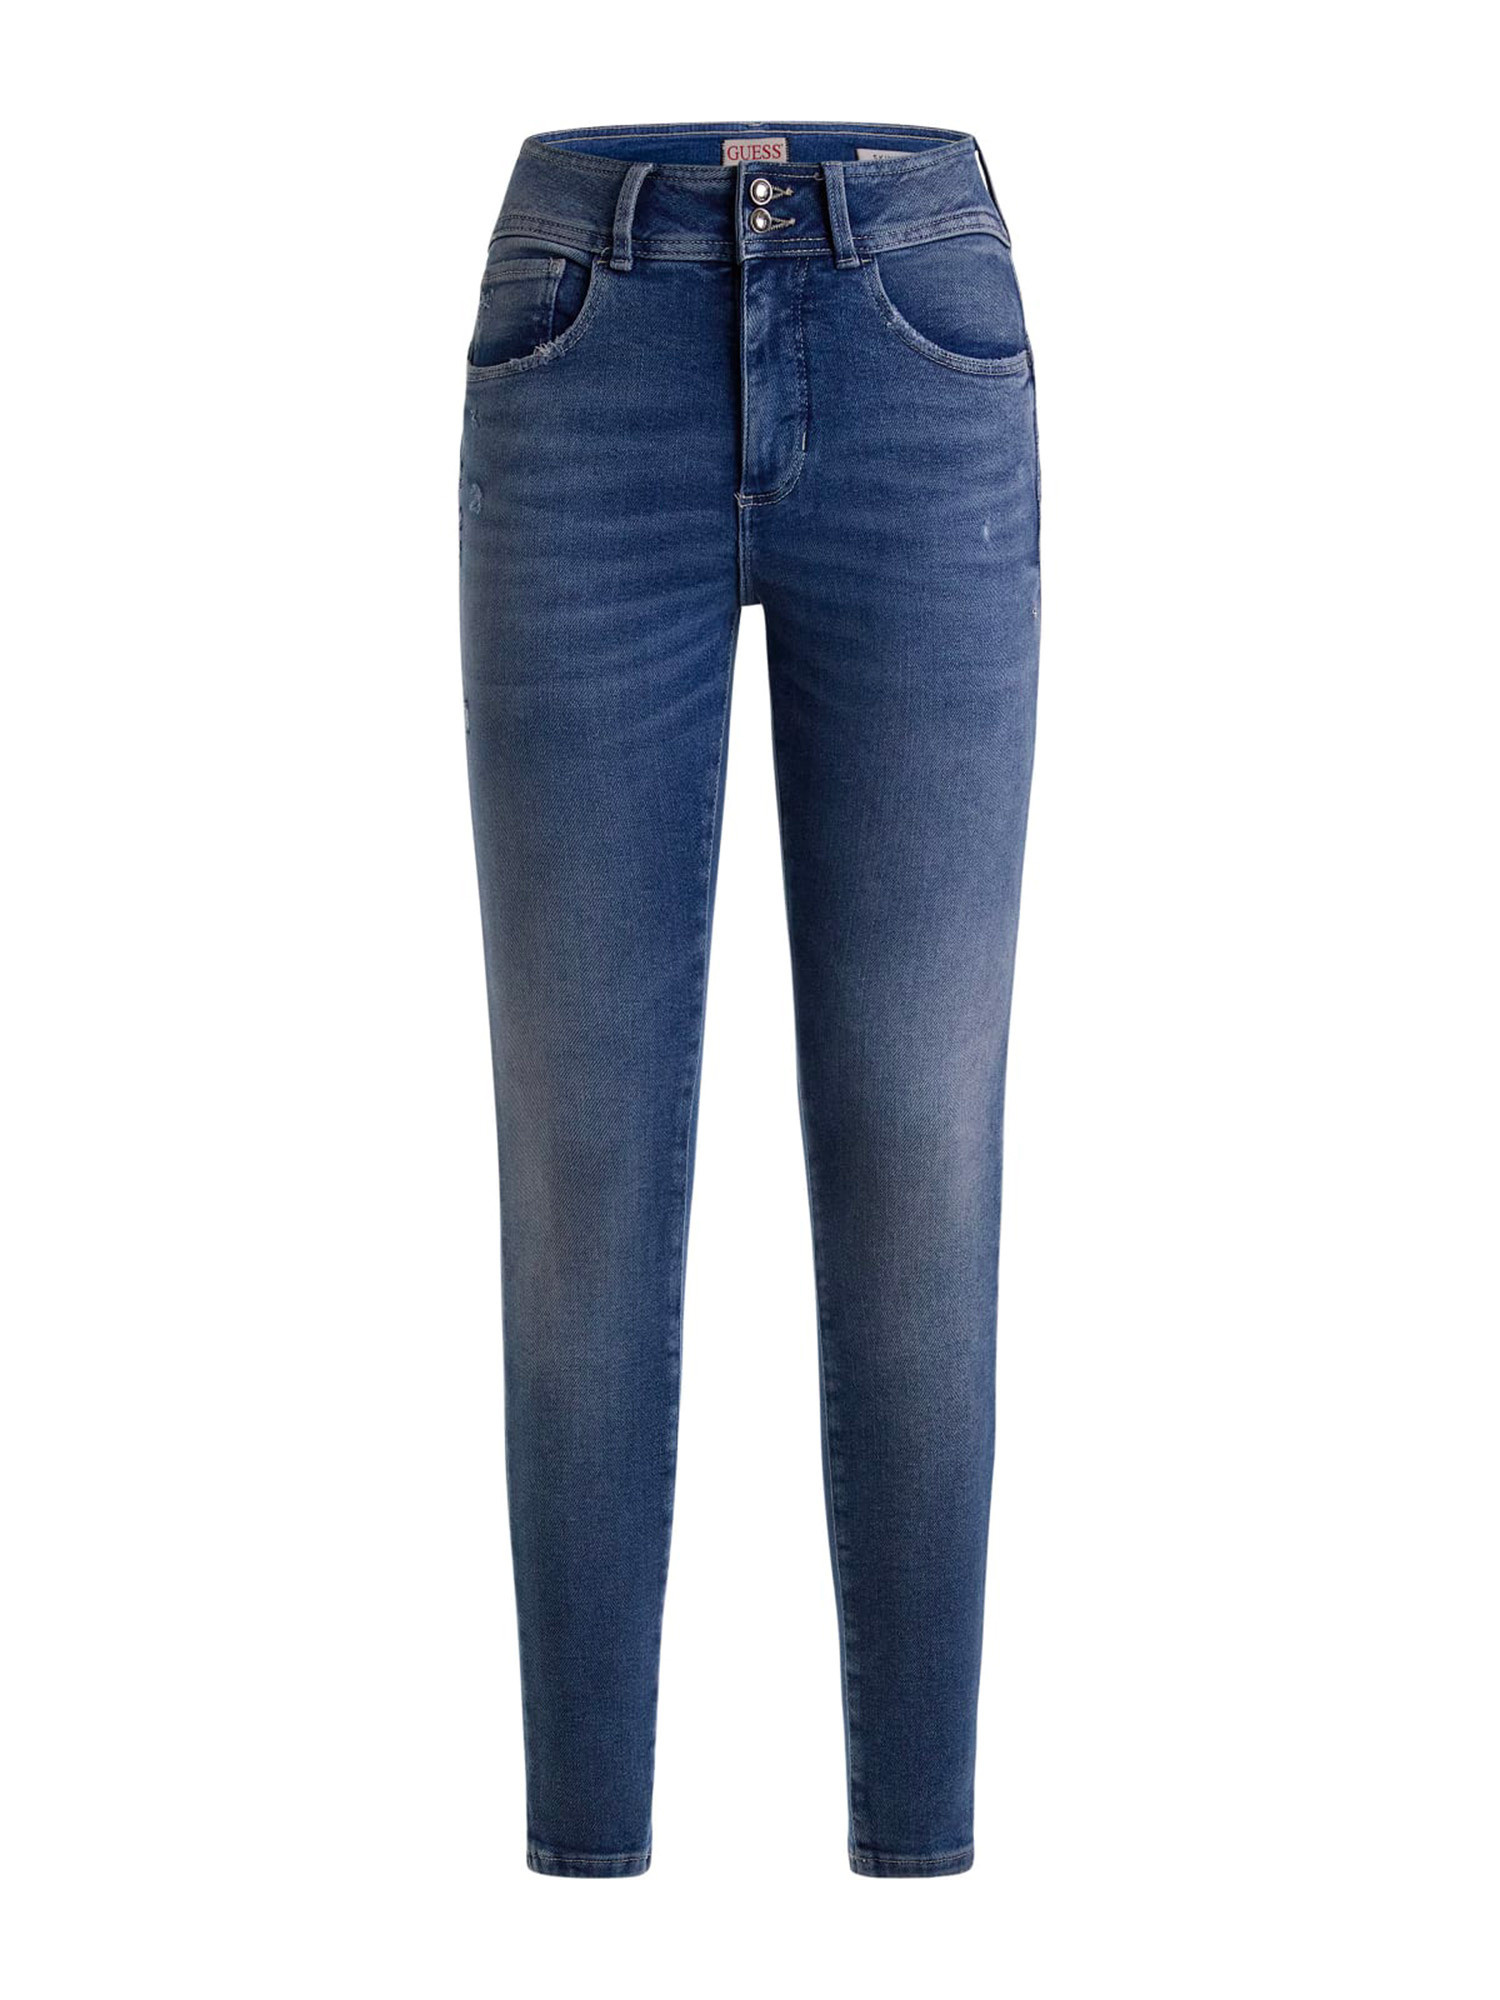 Guess - 5-pocket bootcut jeans, Denim, large image number 0